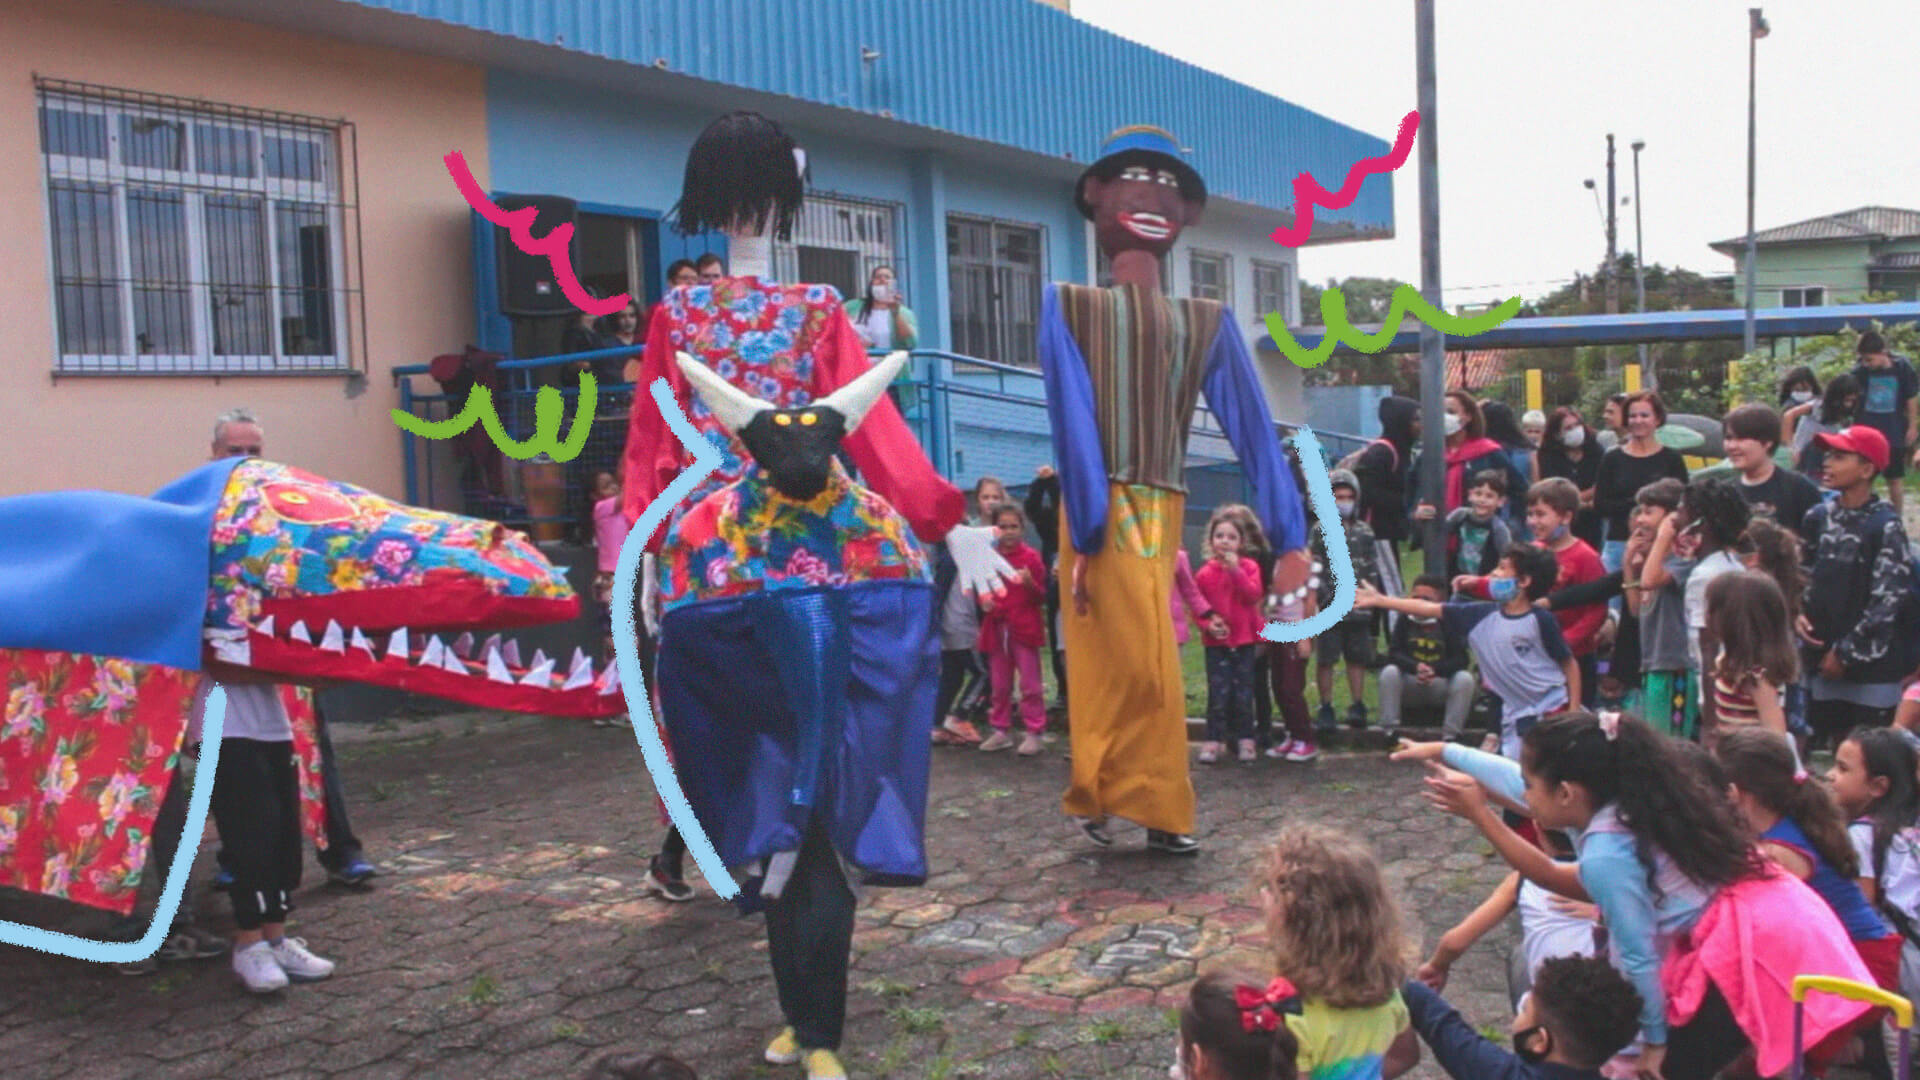 Dois personagens do folguedo Boi de mamão com roupas coloridas se apresentam no pátio de uma escola e as crianças assistem à volta